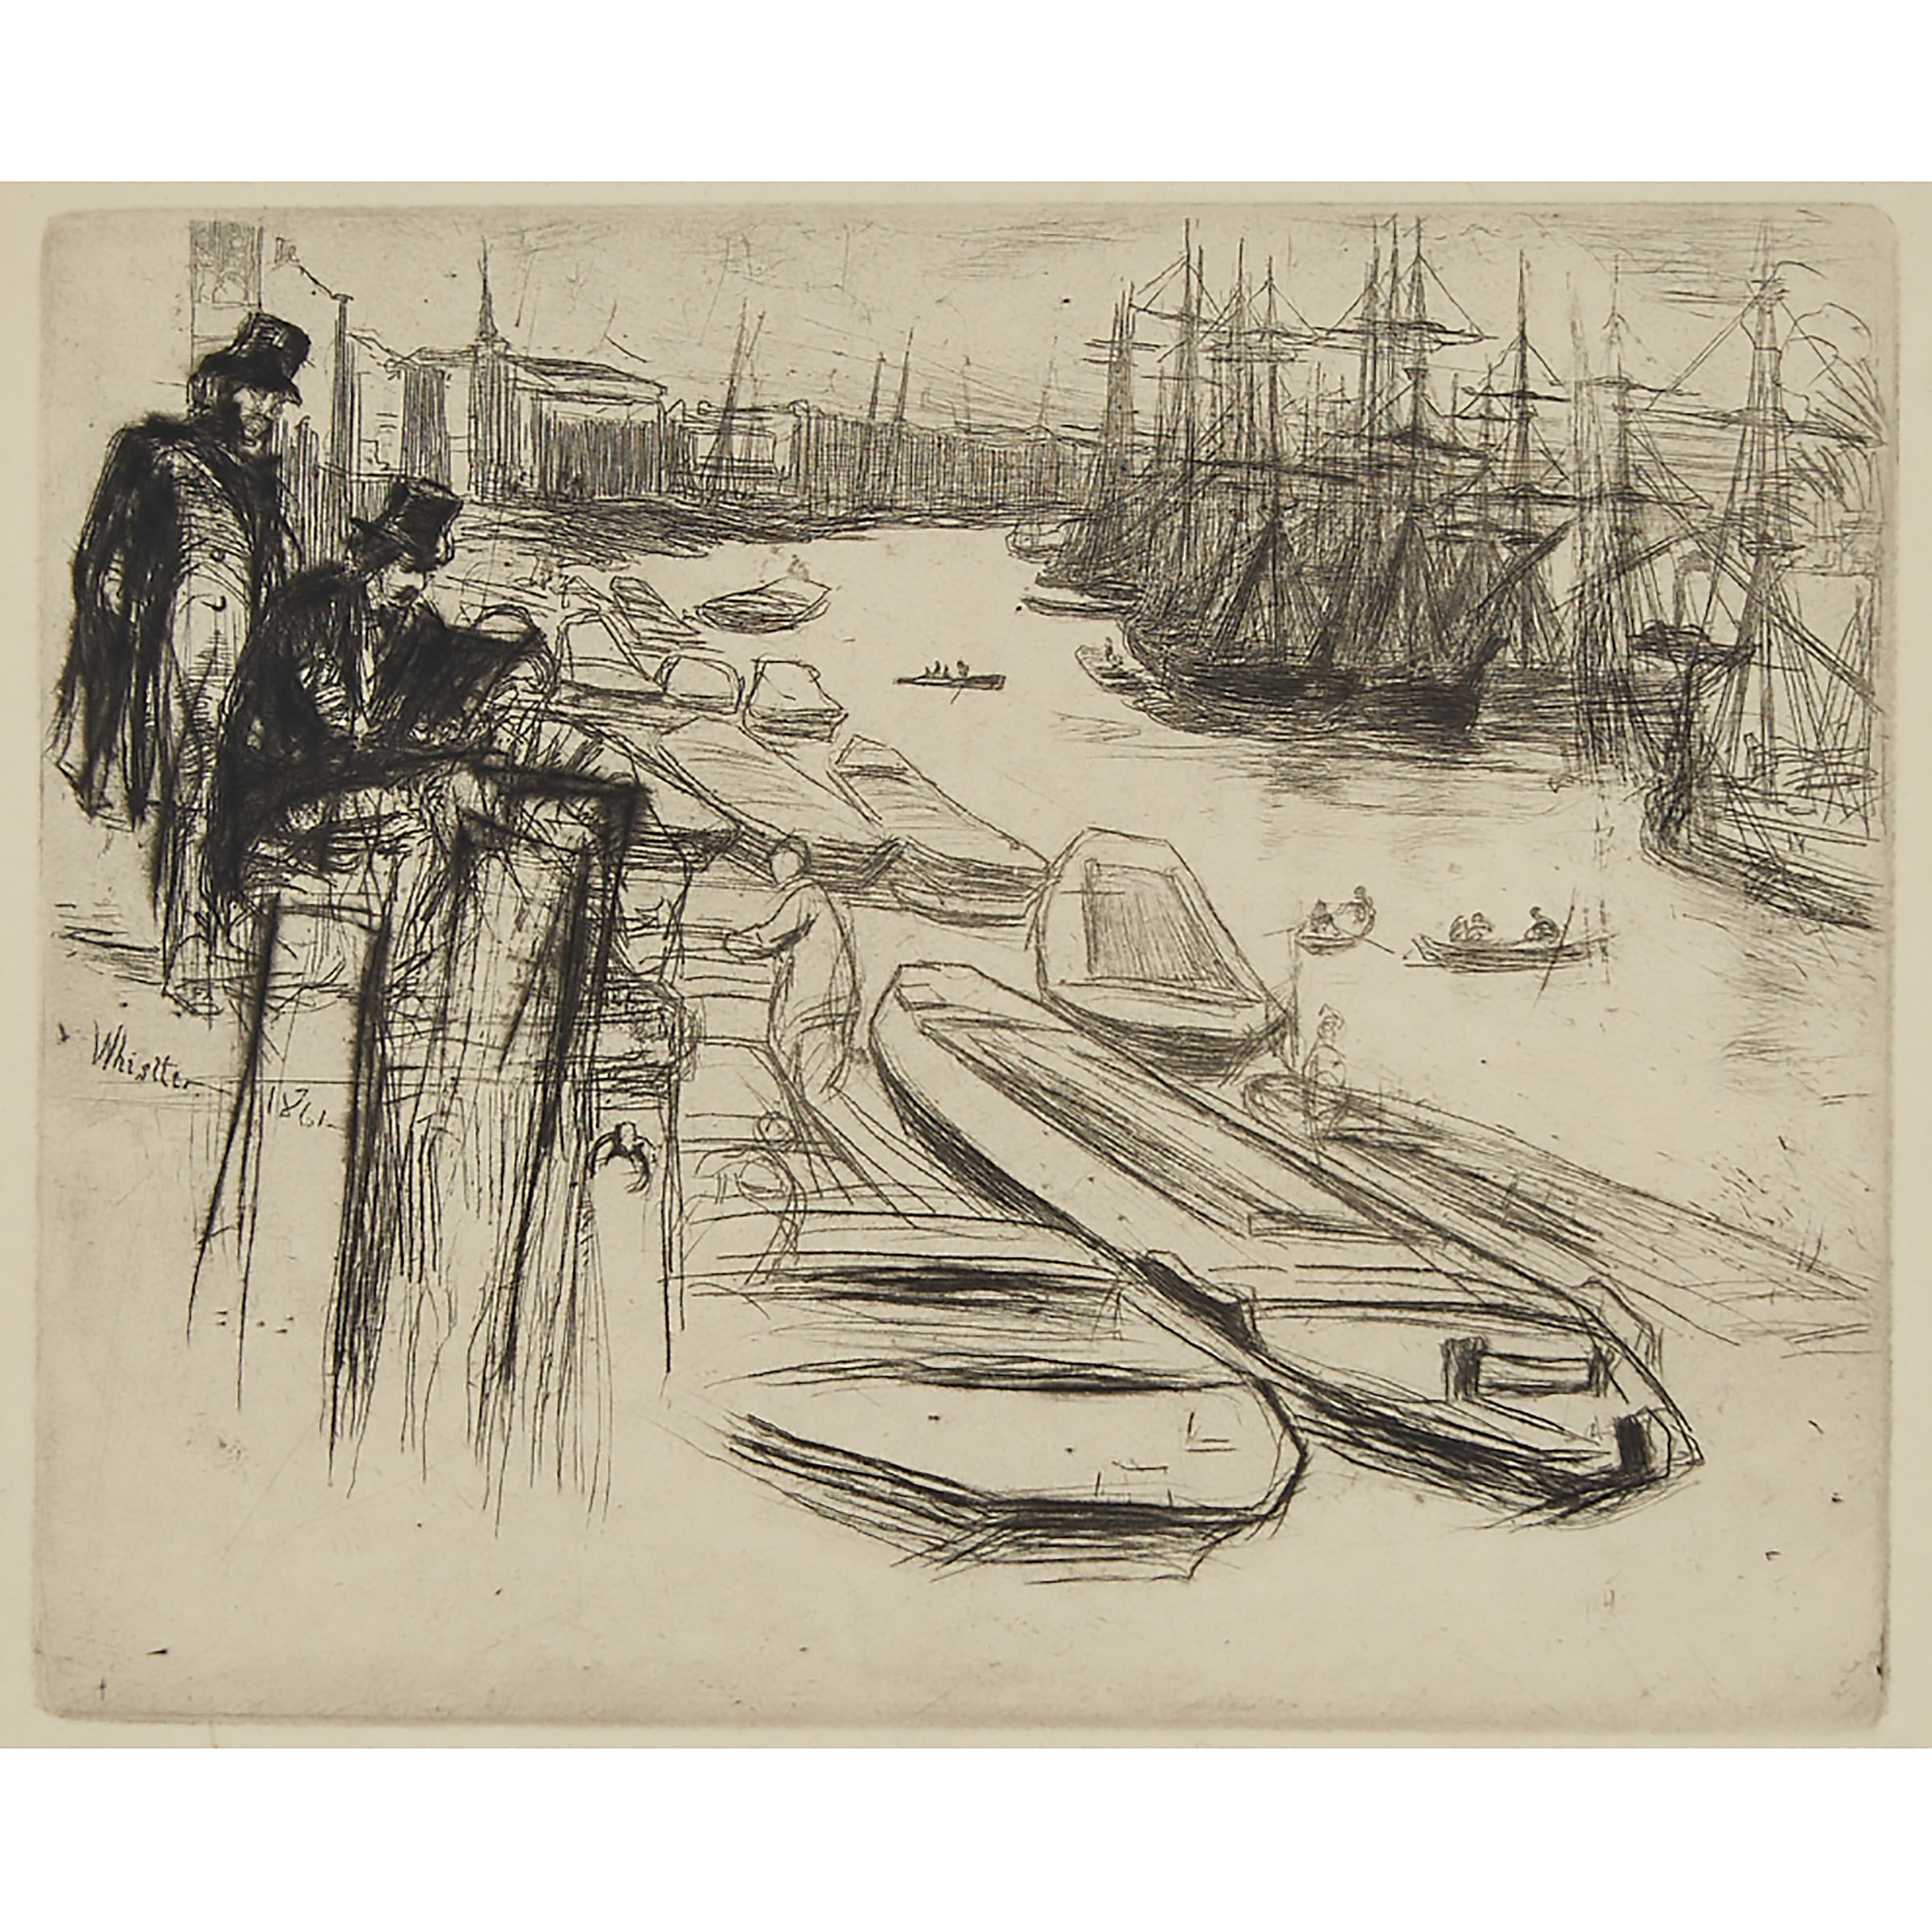 James Abbott McNeill Whistler (1834-1903)